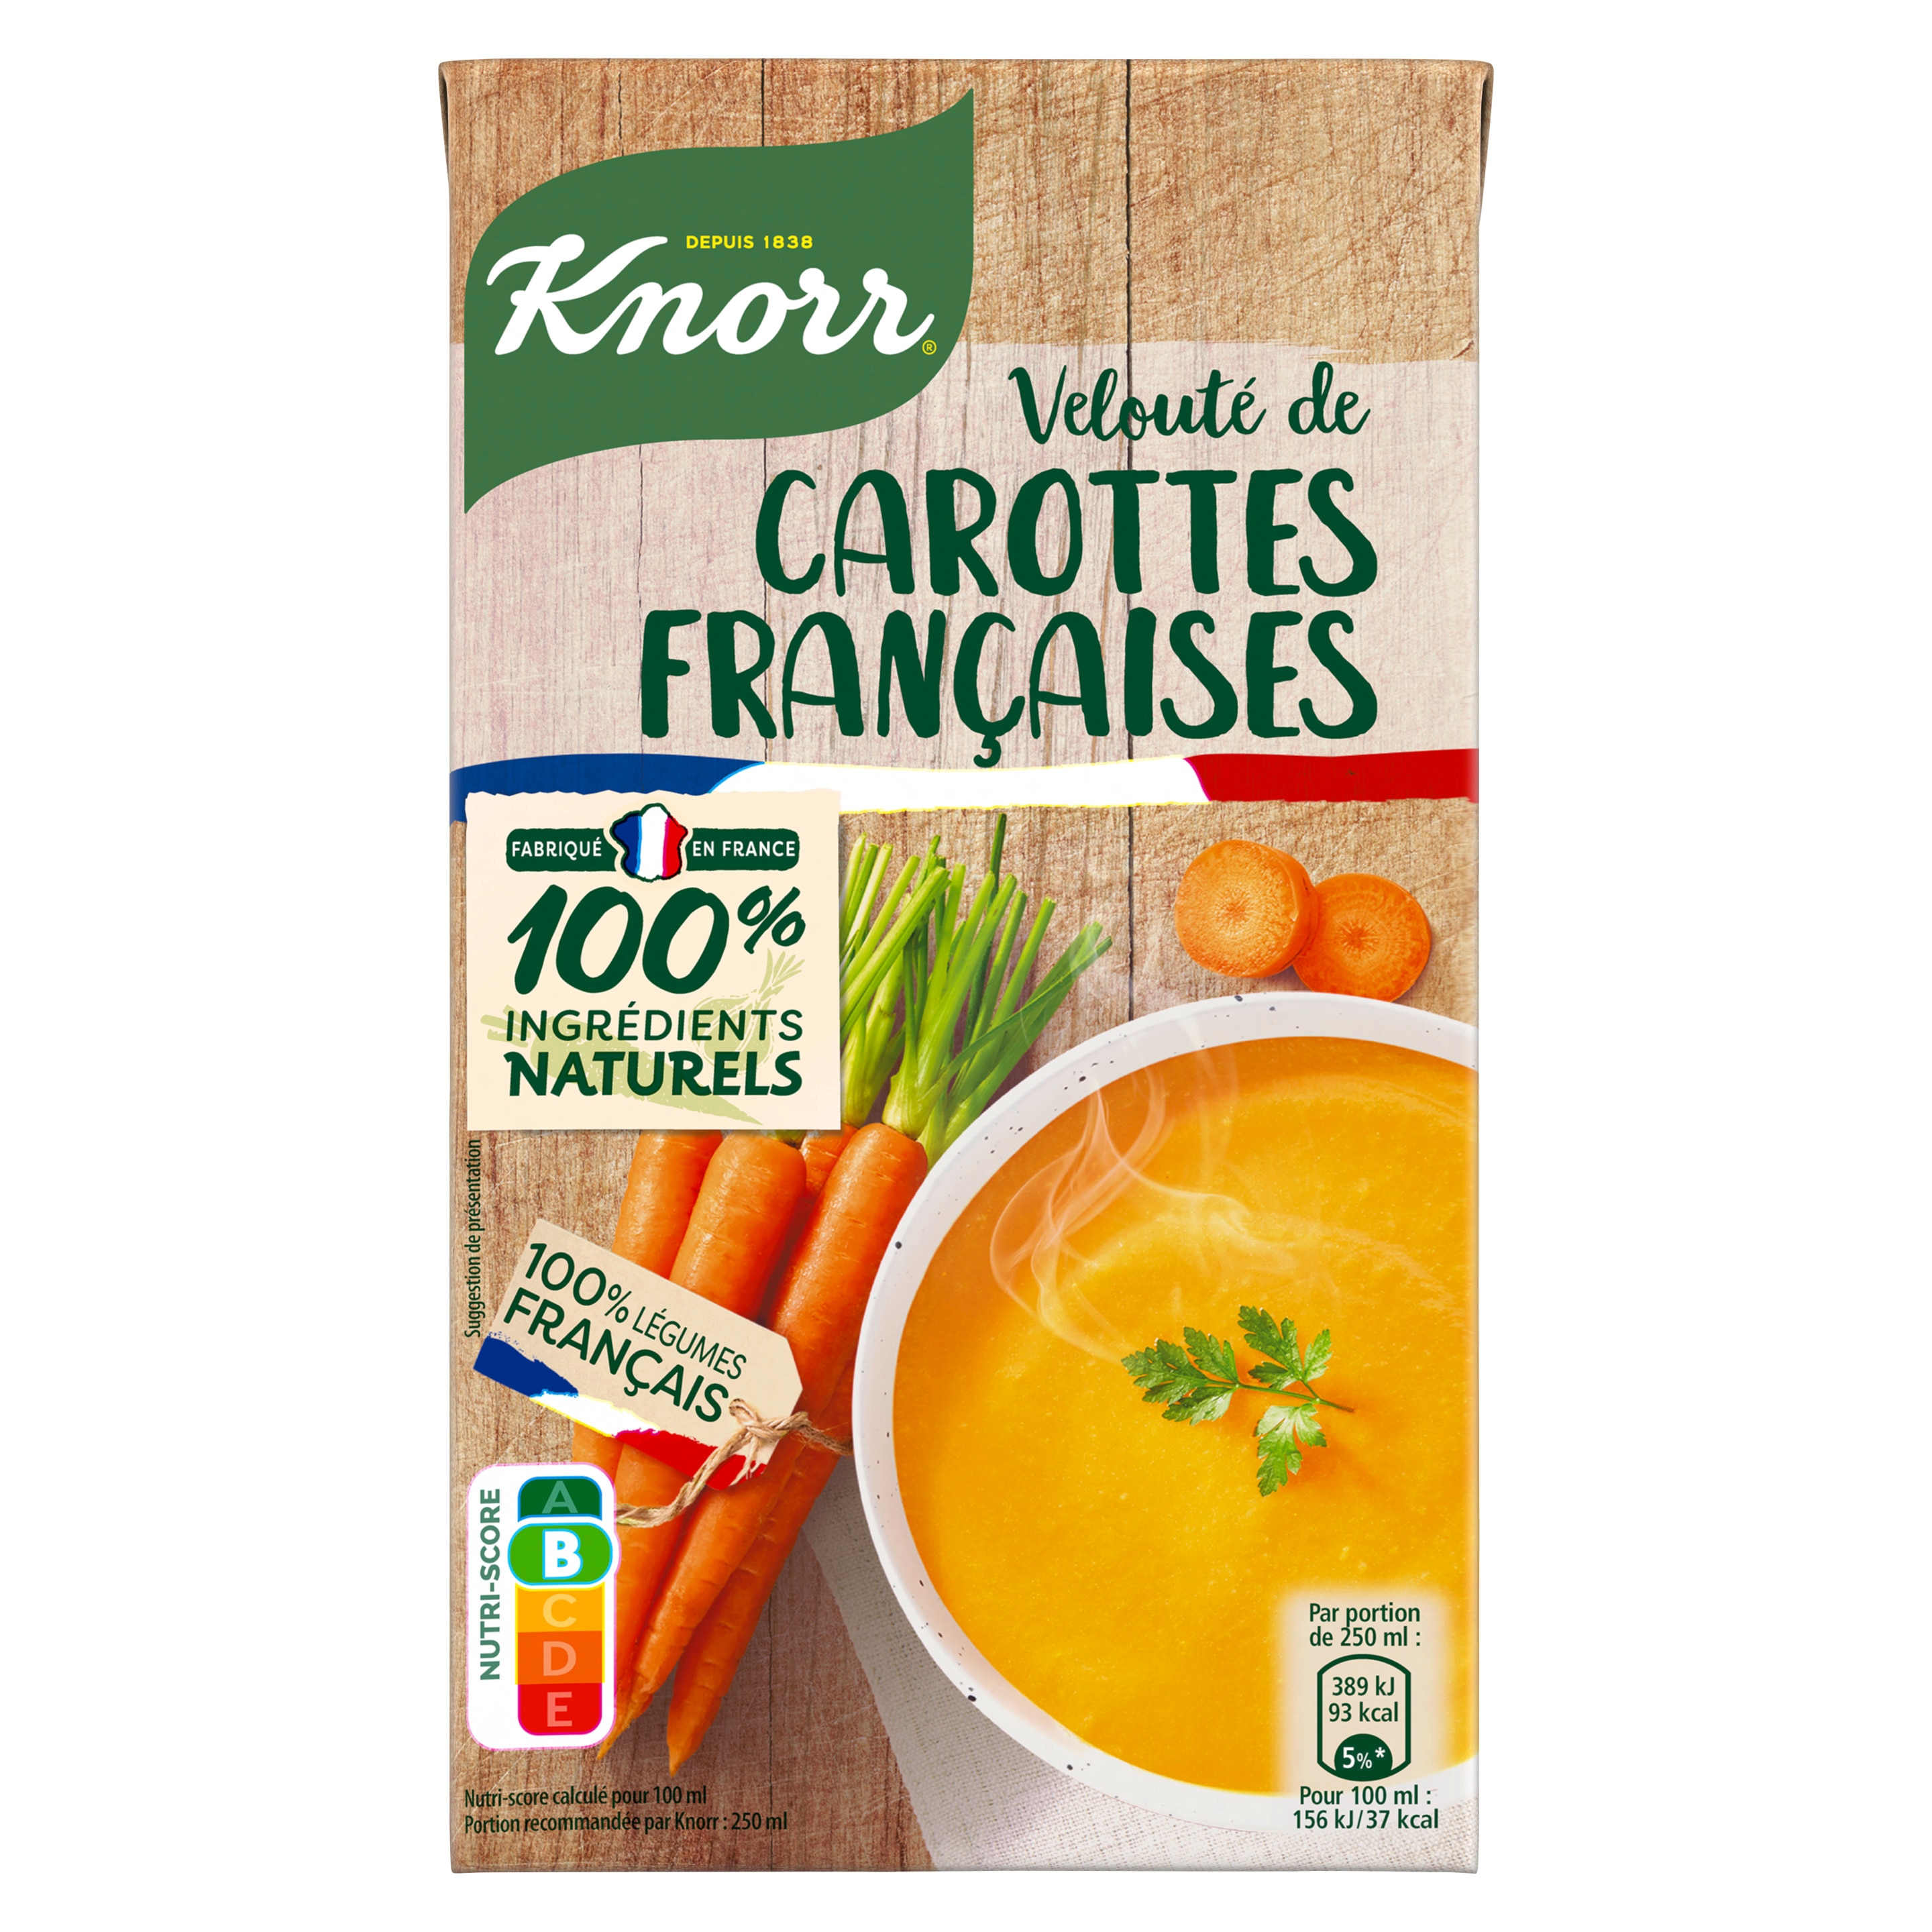 carottes et poireaux français